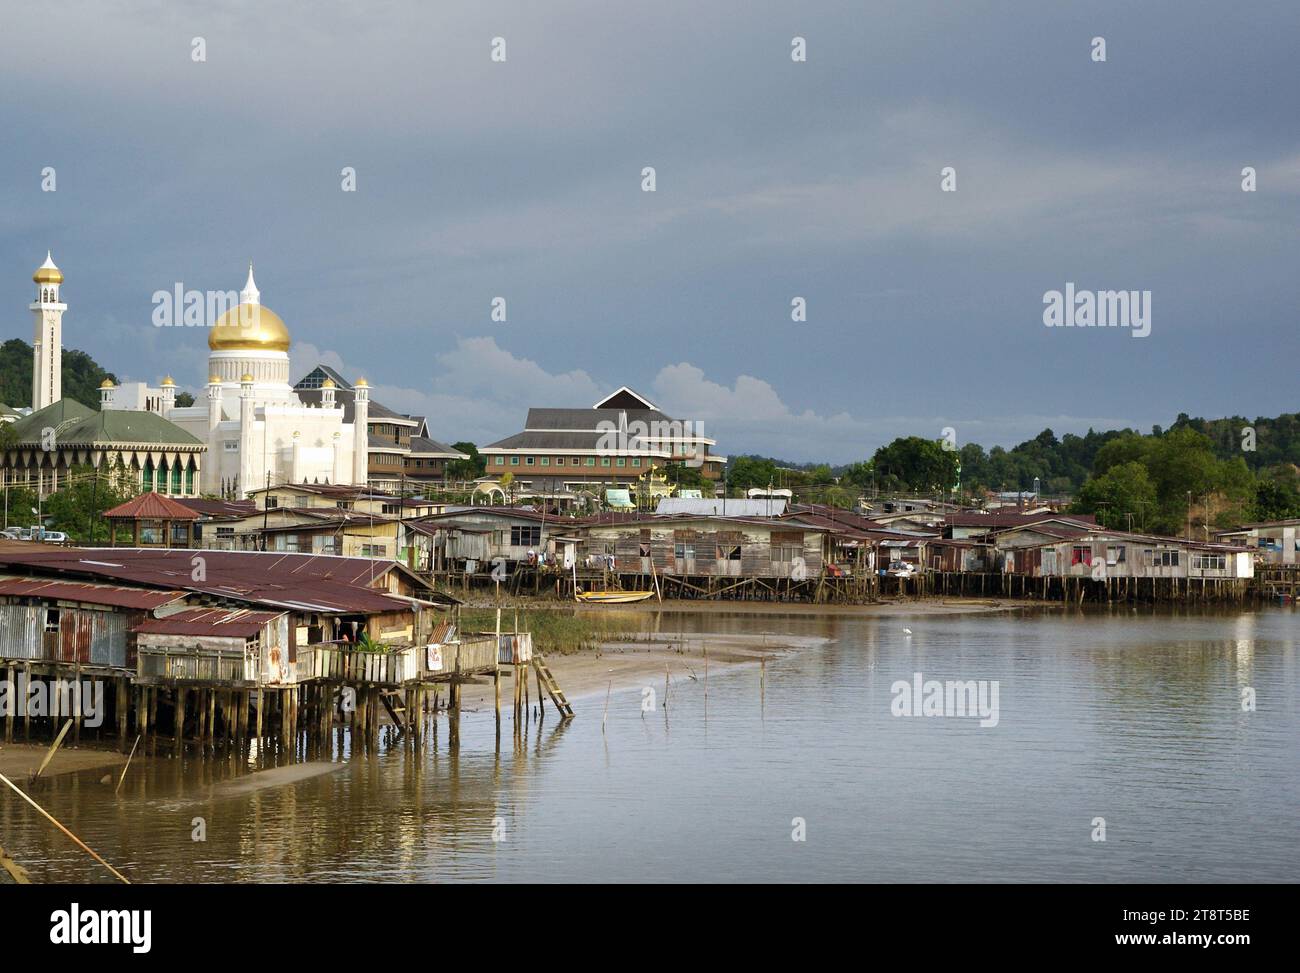 Bandar seri Begawan. Brunei, Brunei, è una piccola nazione sull'isola del Borneo, in 2 sezioni distinte circondate dalla Malesia e dal Mar Cinese meridionale. È conosciuta per le sue spiagge e la sua foresta pluviale, la maggior parte protetta all'interno delle riserve. La capitale, Bandar seri Begawan, ospita l'opulenta moschea Bolkiah JameAsr Hassanil e le sue 29 cupole dorate. L'imponente palazzo Istana Nurul Iman della capitale è la residenza del sultano Bruneis Foto Stock